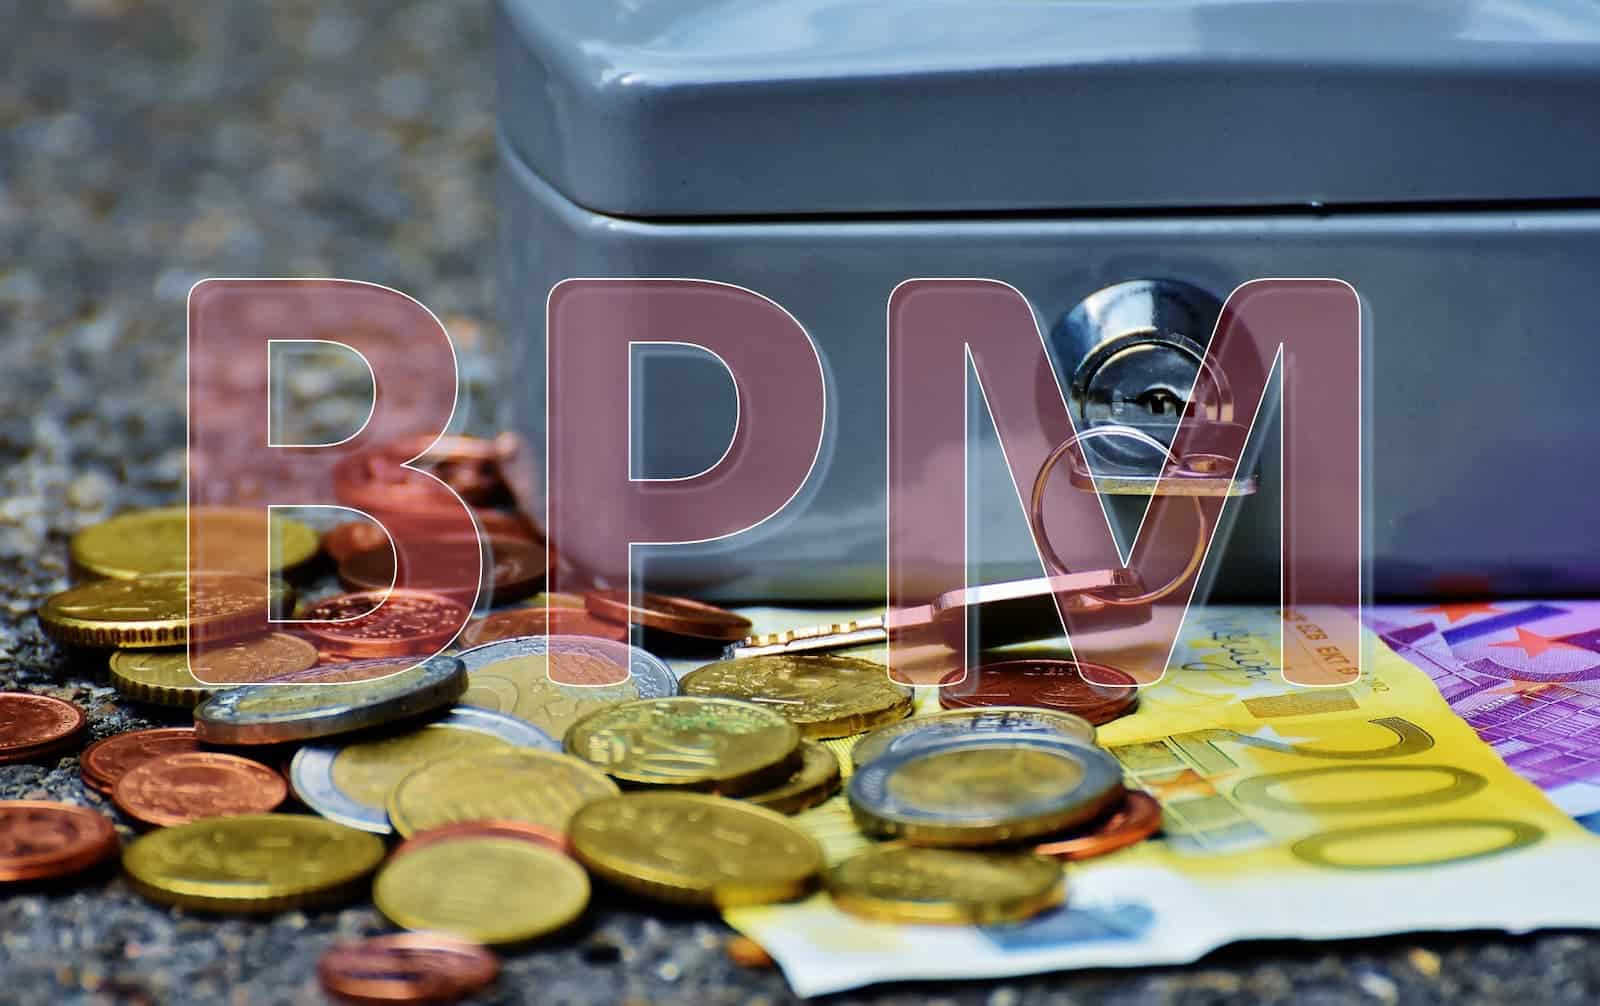 Afbeelding van geldkistje en euro's, met de letters BPM erdoorheen